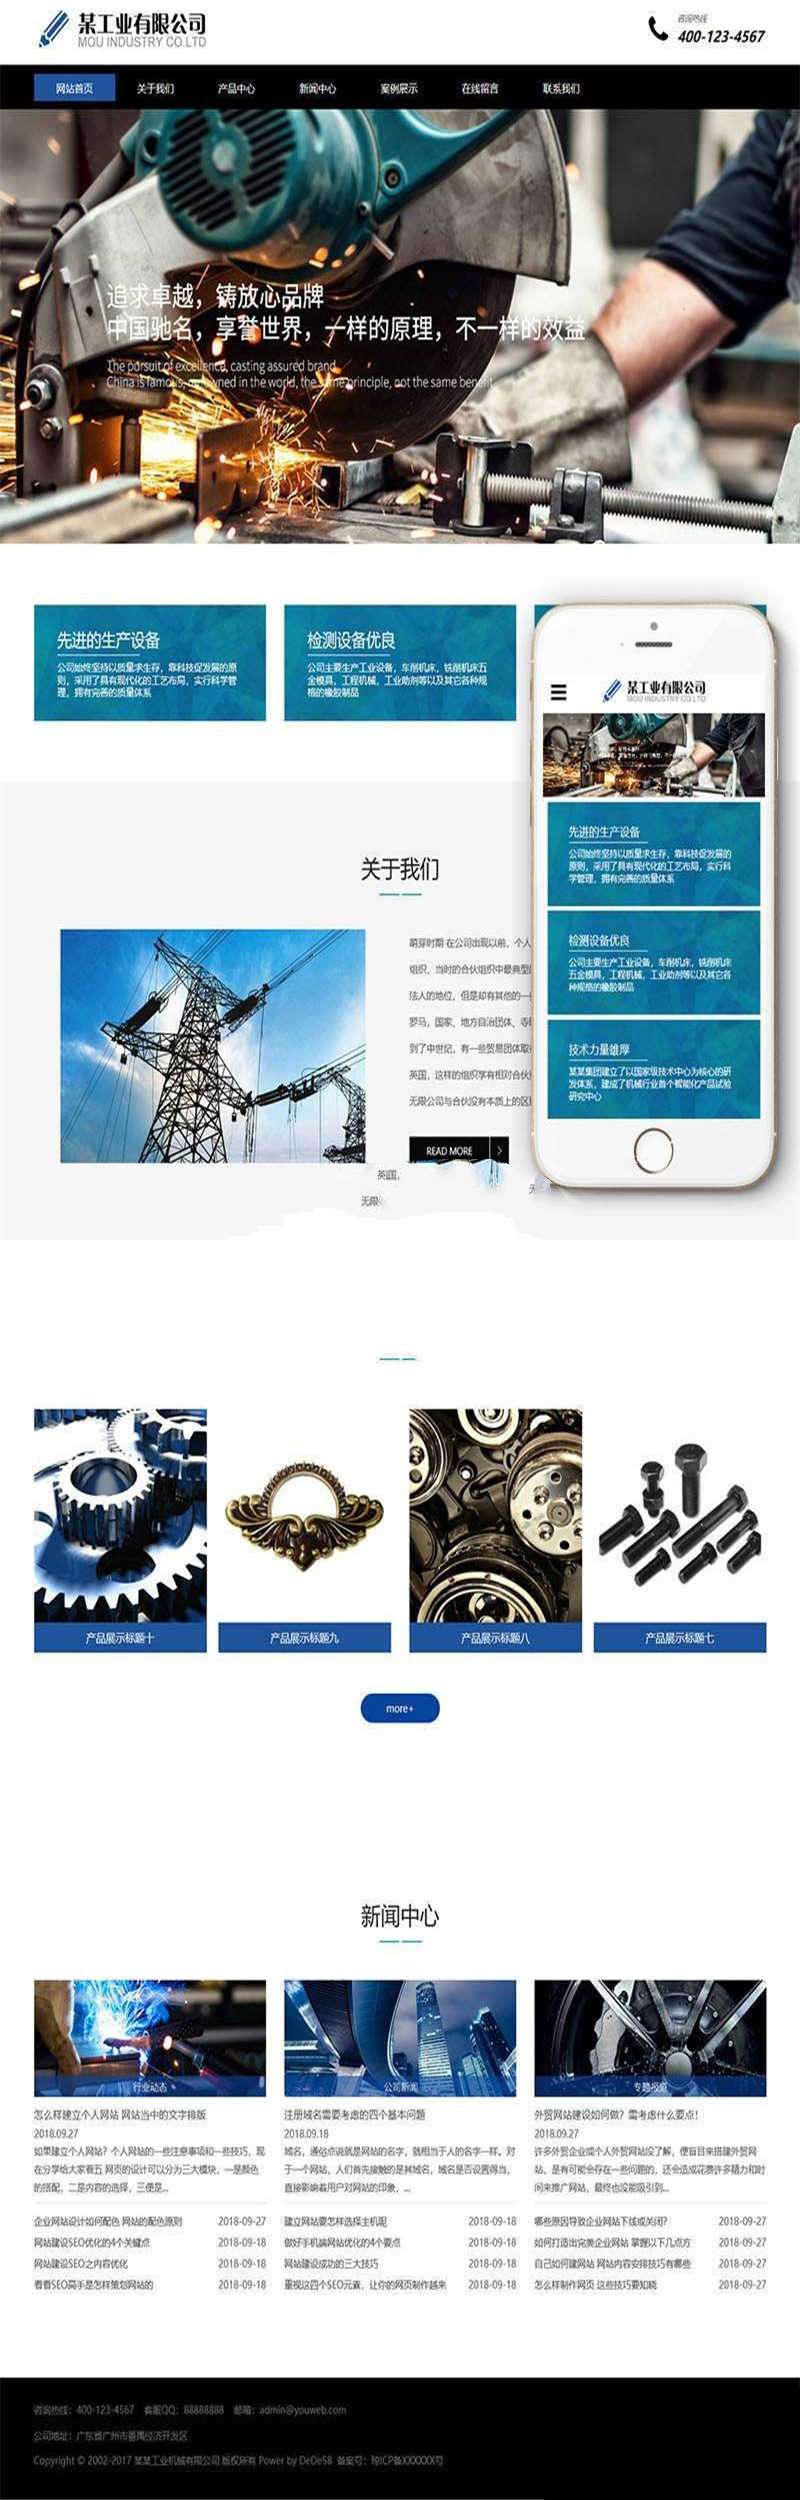 [企业源码]织梦dedecms响应式工业机械铸造设备企业网站模板(自适应手机移动端)插图